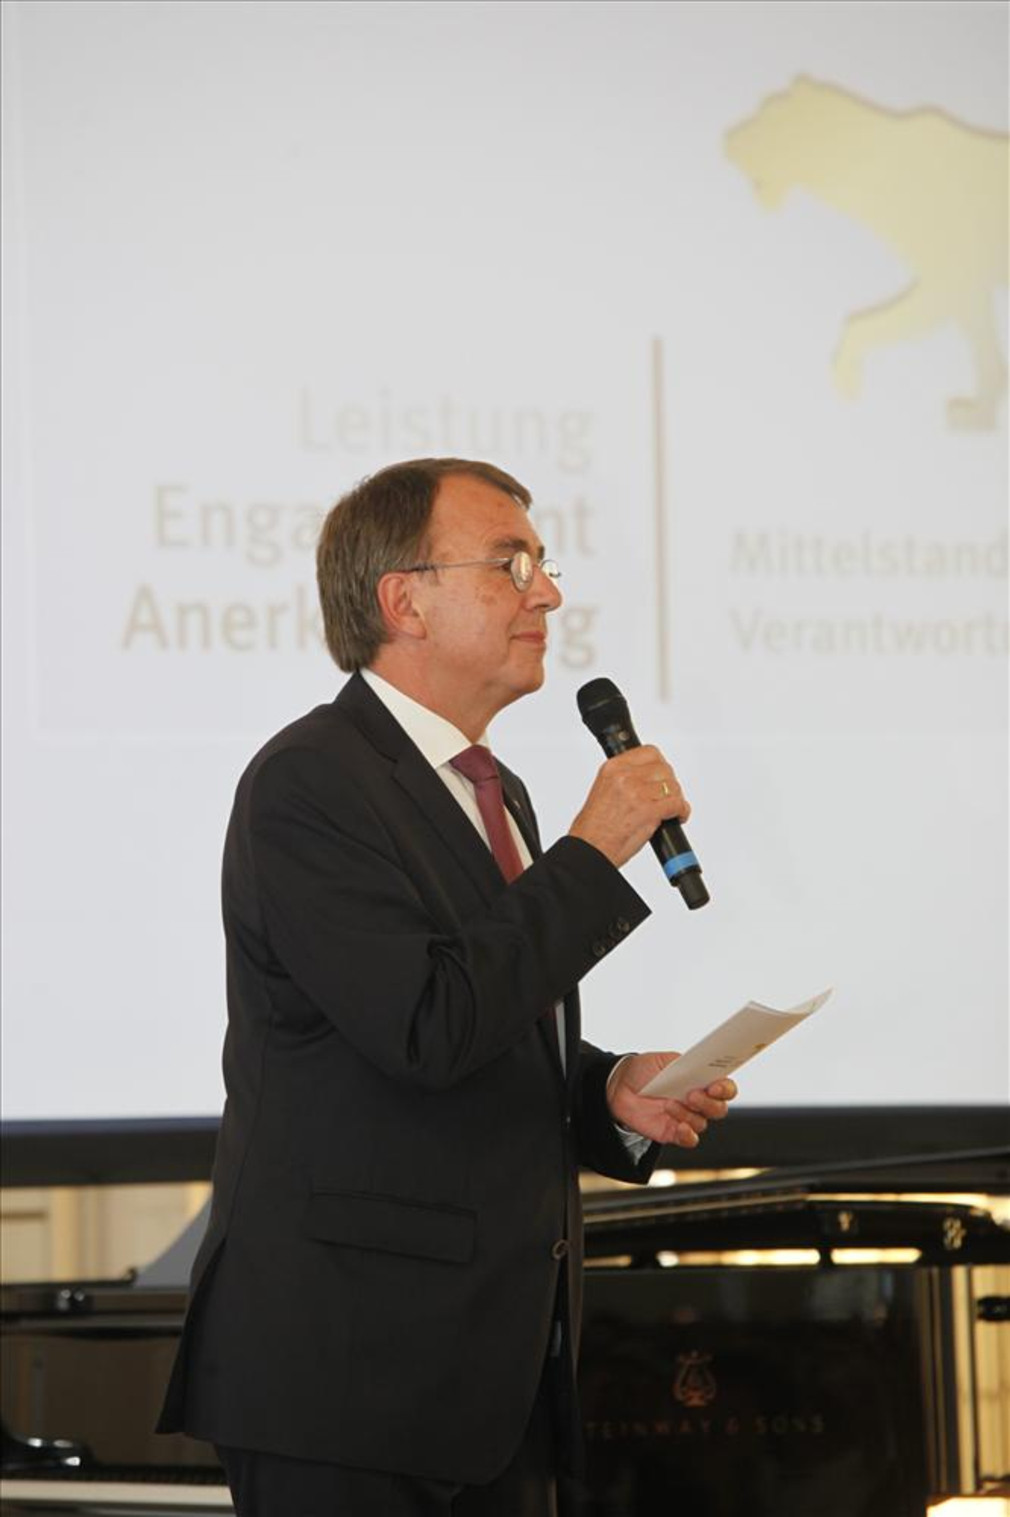 Verleihung des LEA-Mittelstandspreises am 4. Juli 2017
Oberkirchenrat Dieter Kaufmann